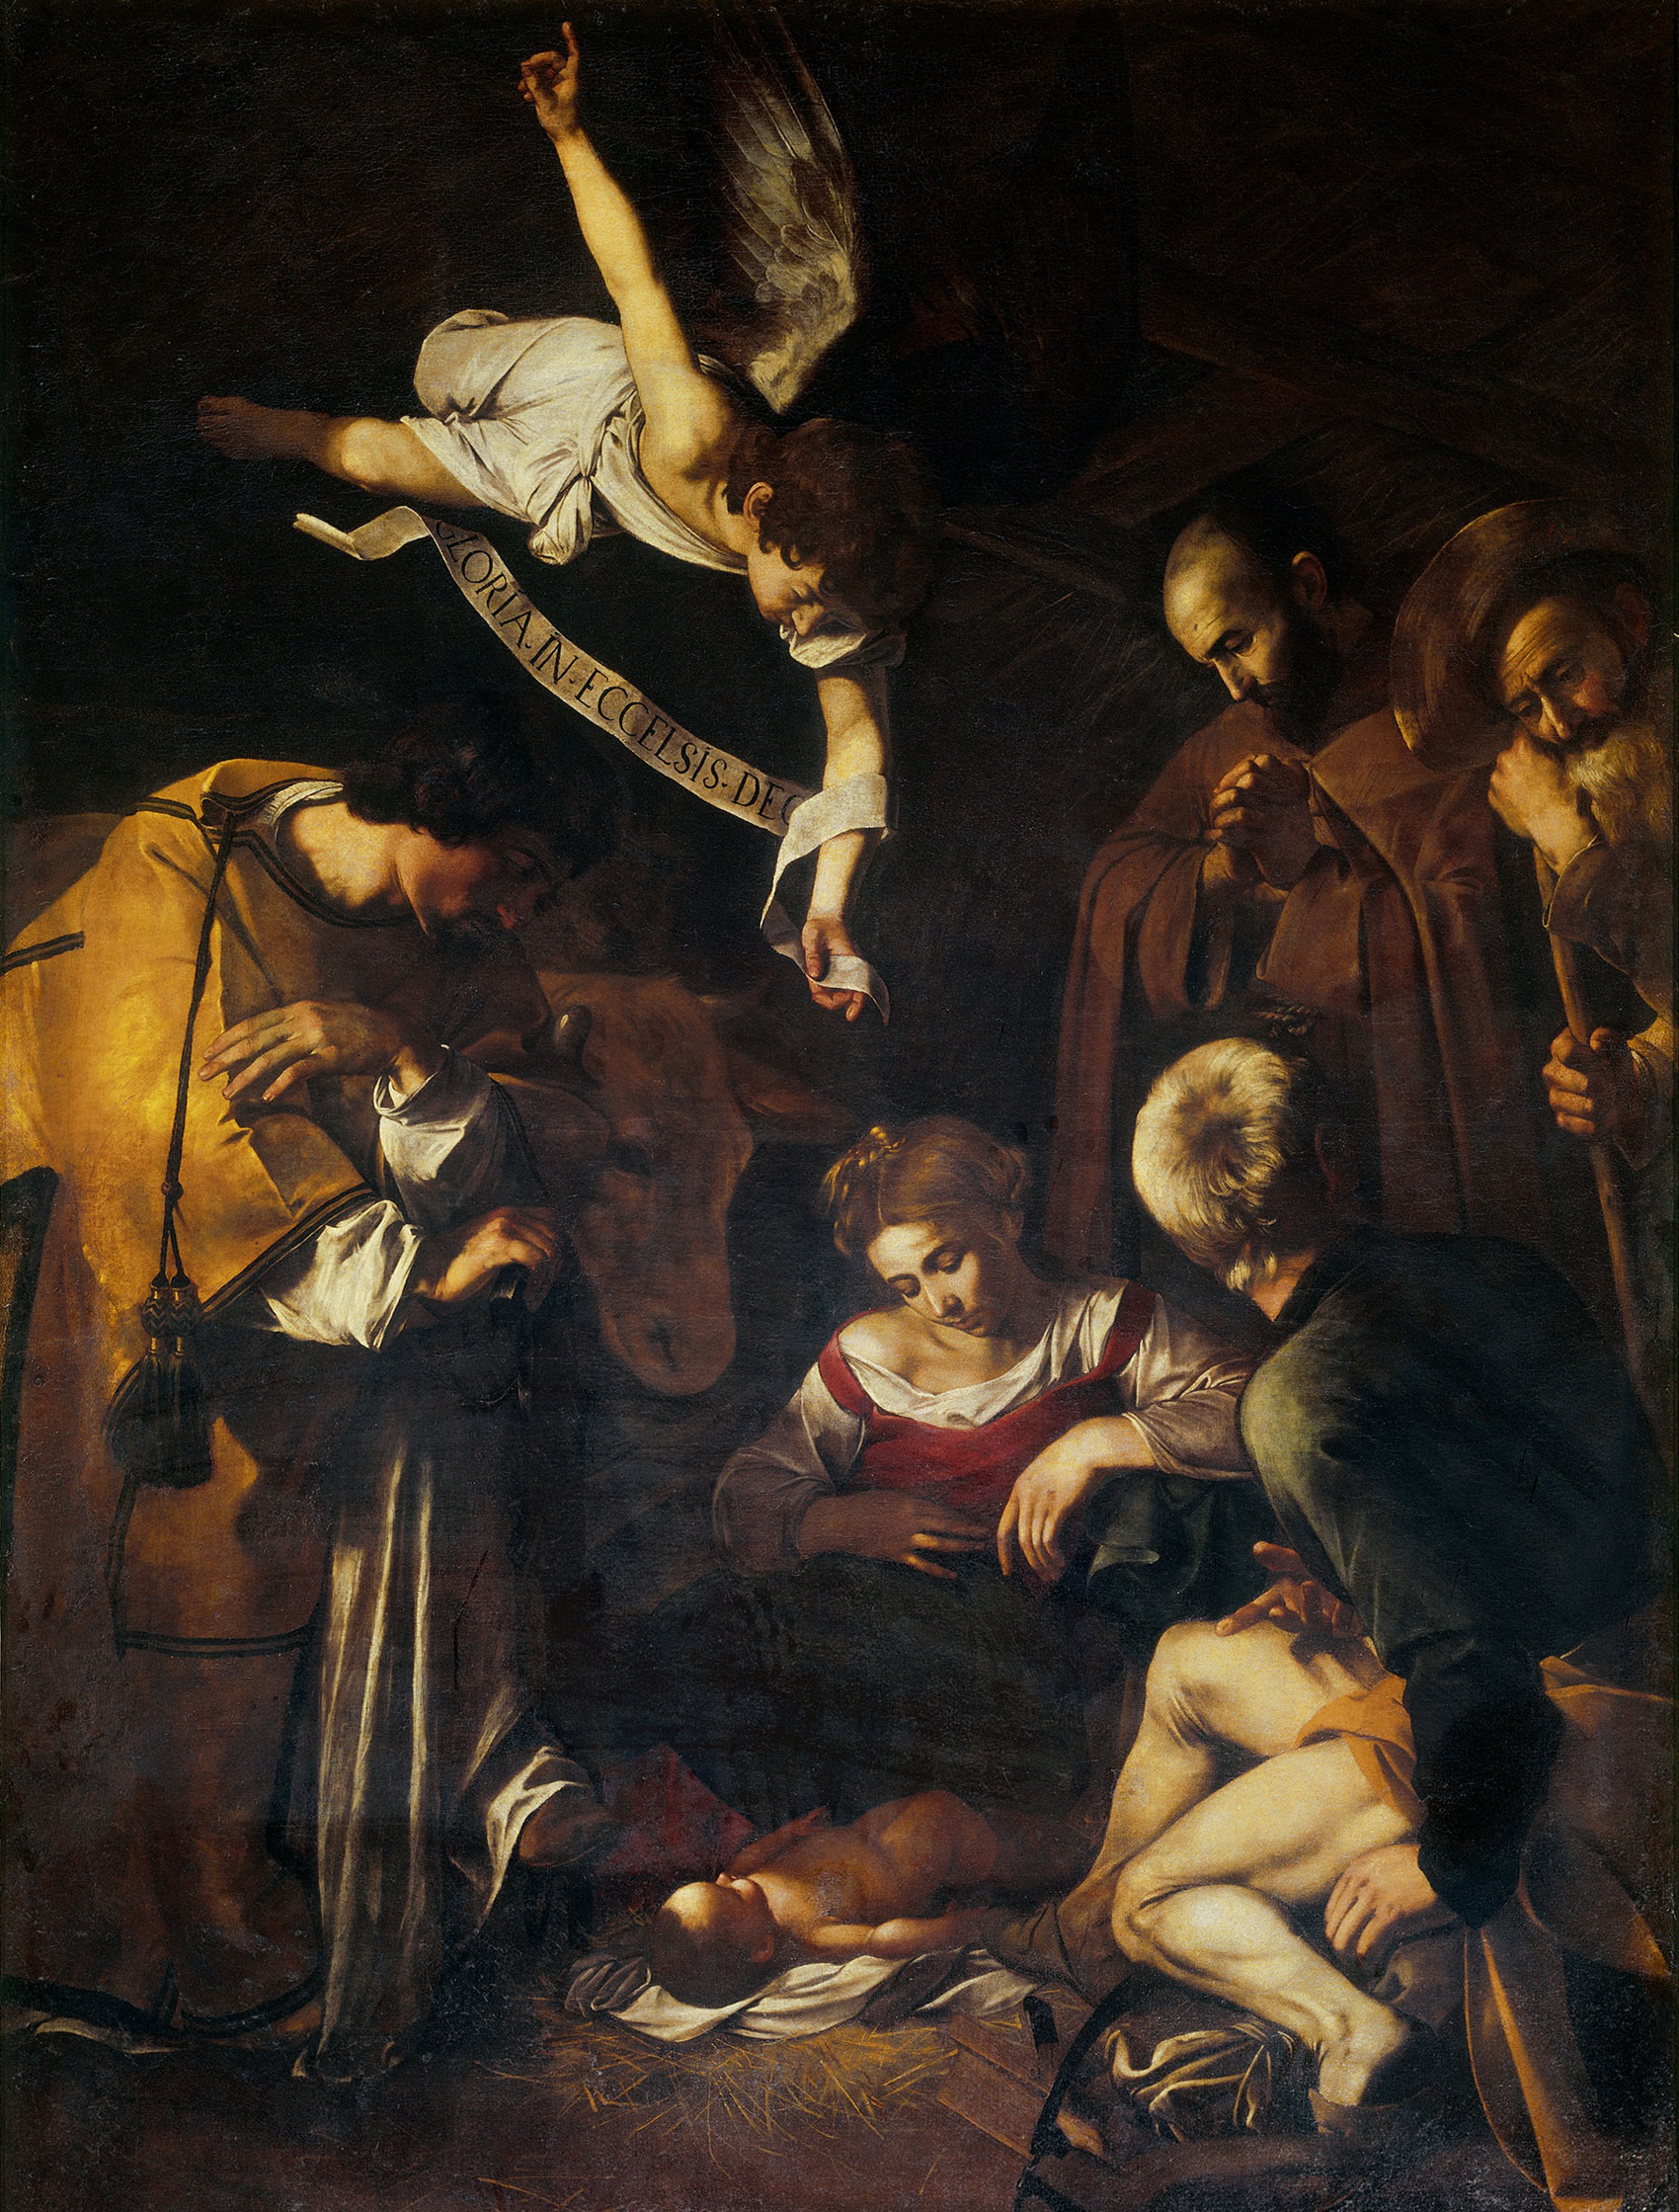 Caravaggio, Natività (1600; olio su tela, 268 x 197 cm; già a Palermo, oratorio di San Lorenzo, trafugata nel 1969)
